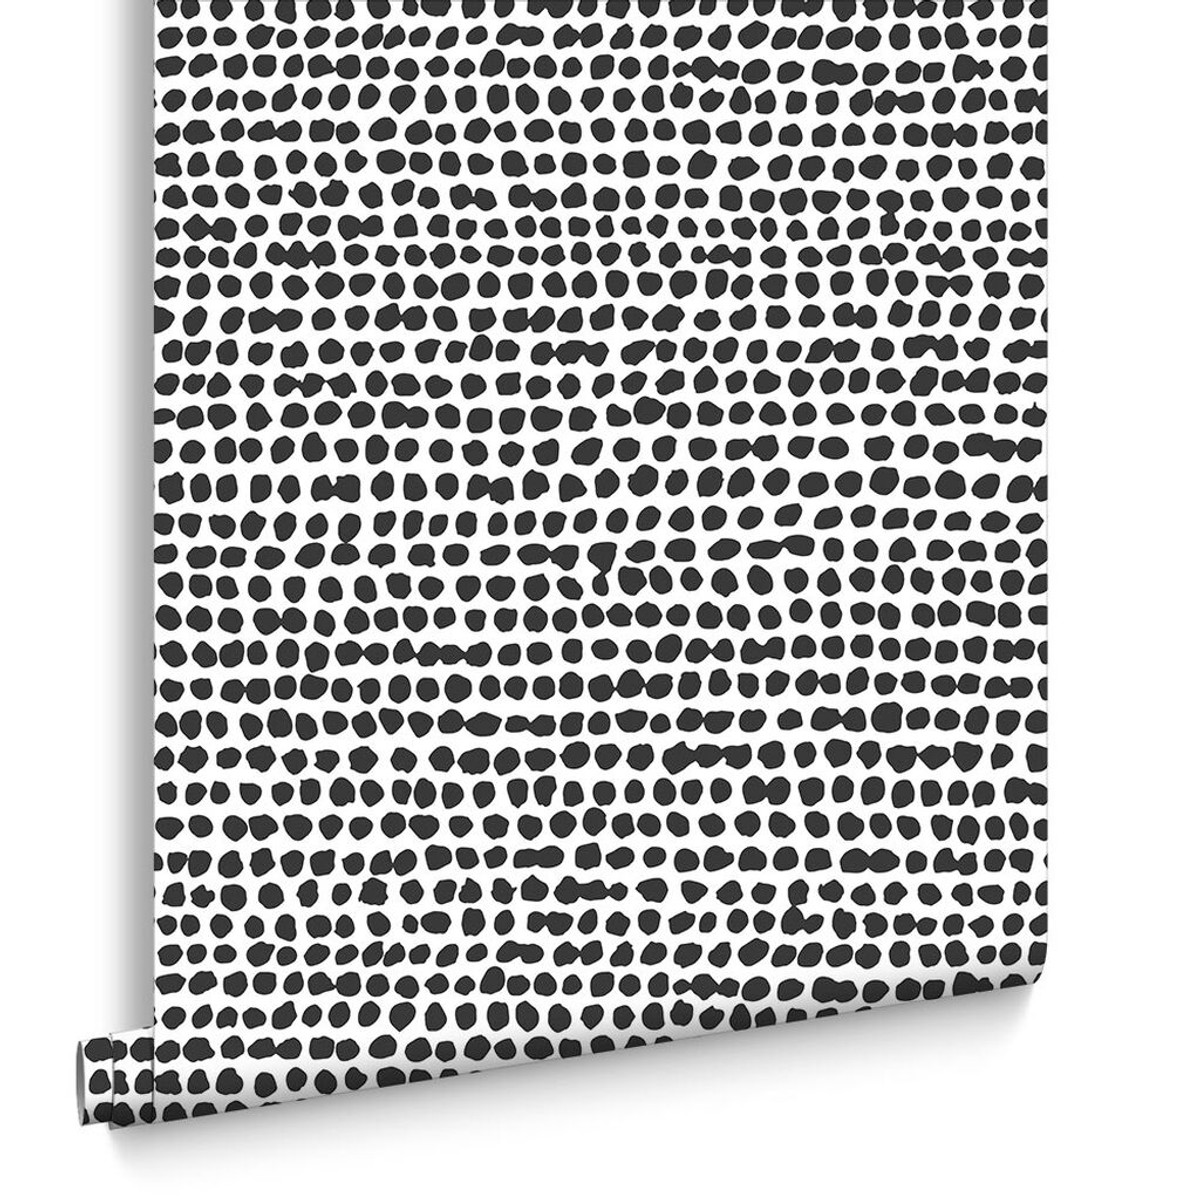 Dots Black & White Wallpaper